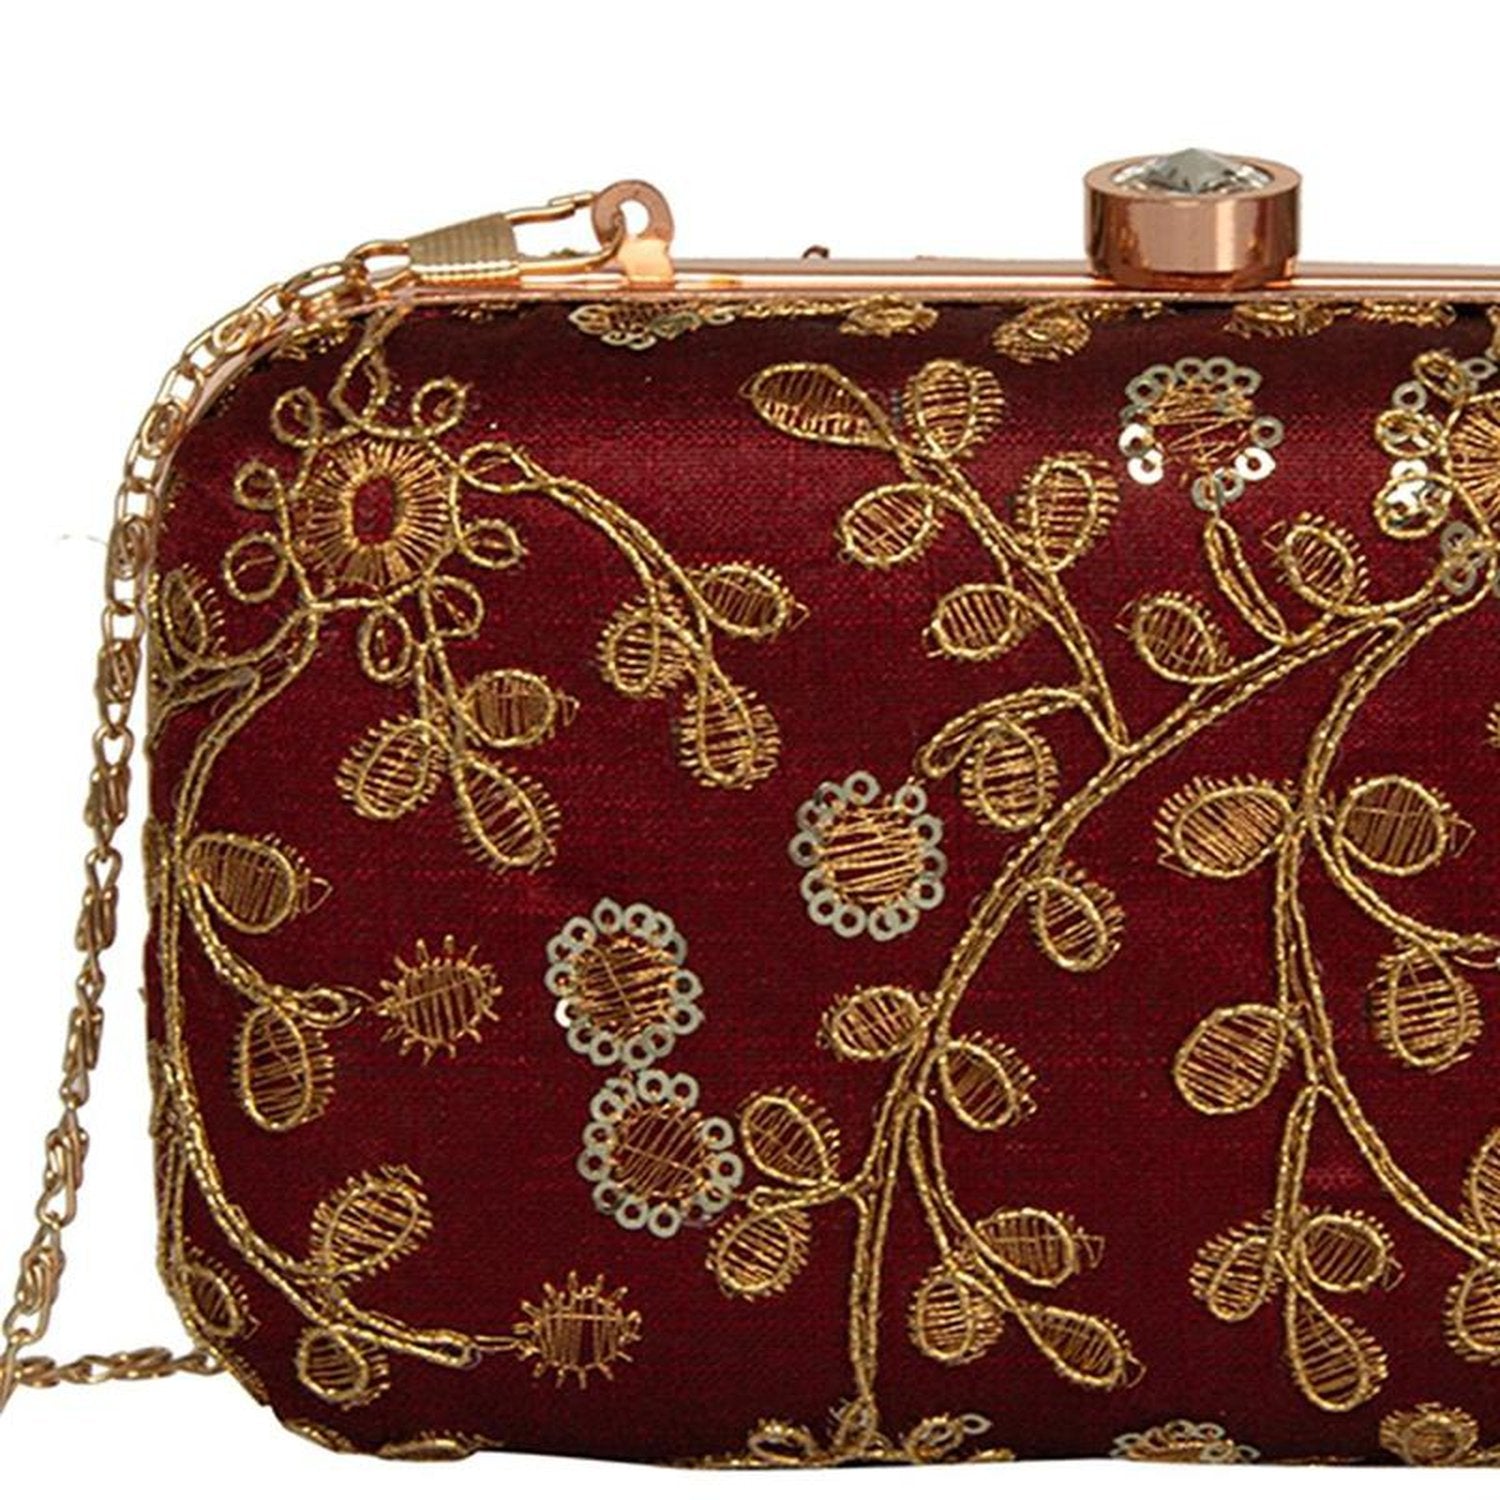 Shimmer Dhaka purses and clutches ready for wedding season! | Fancy clutch  purse, Bridal clutch, Fancy clutch